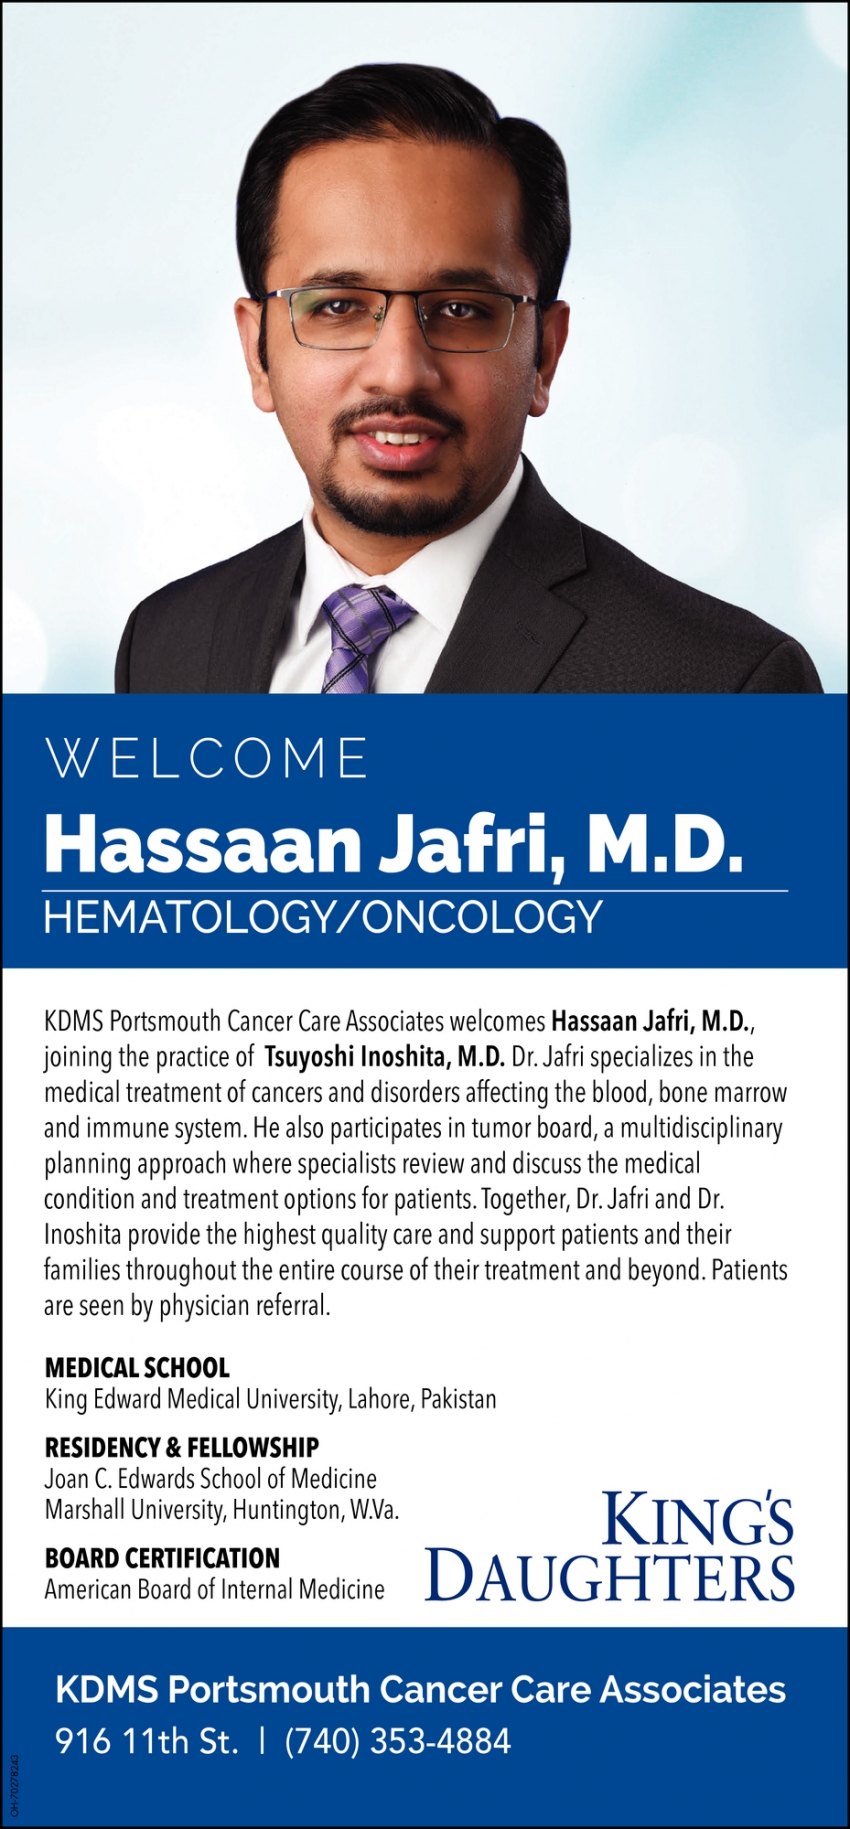 Welcome Hassaan Jafri, M.D.